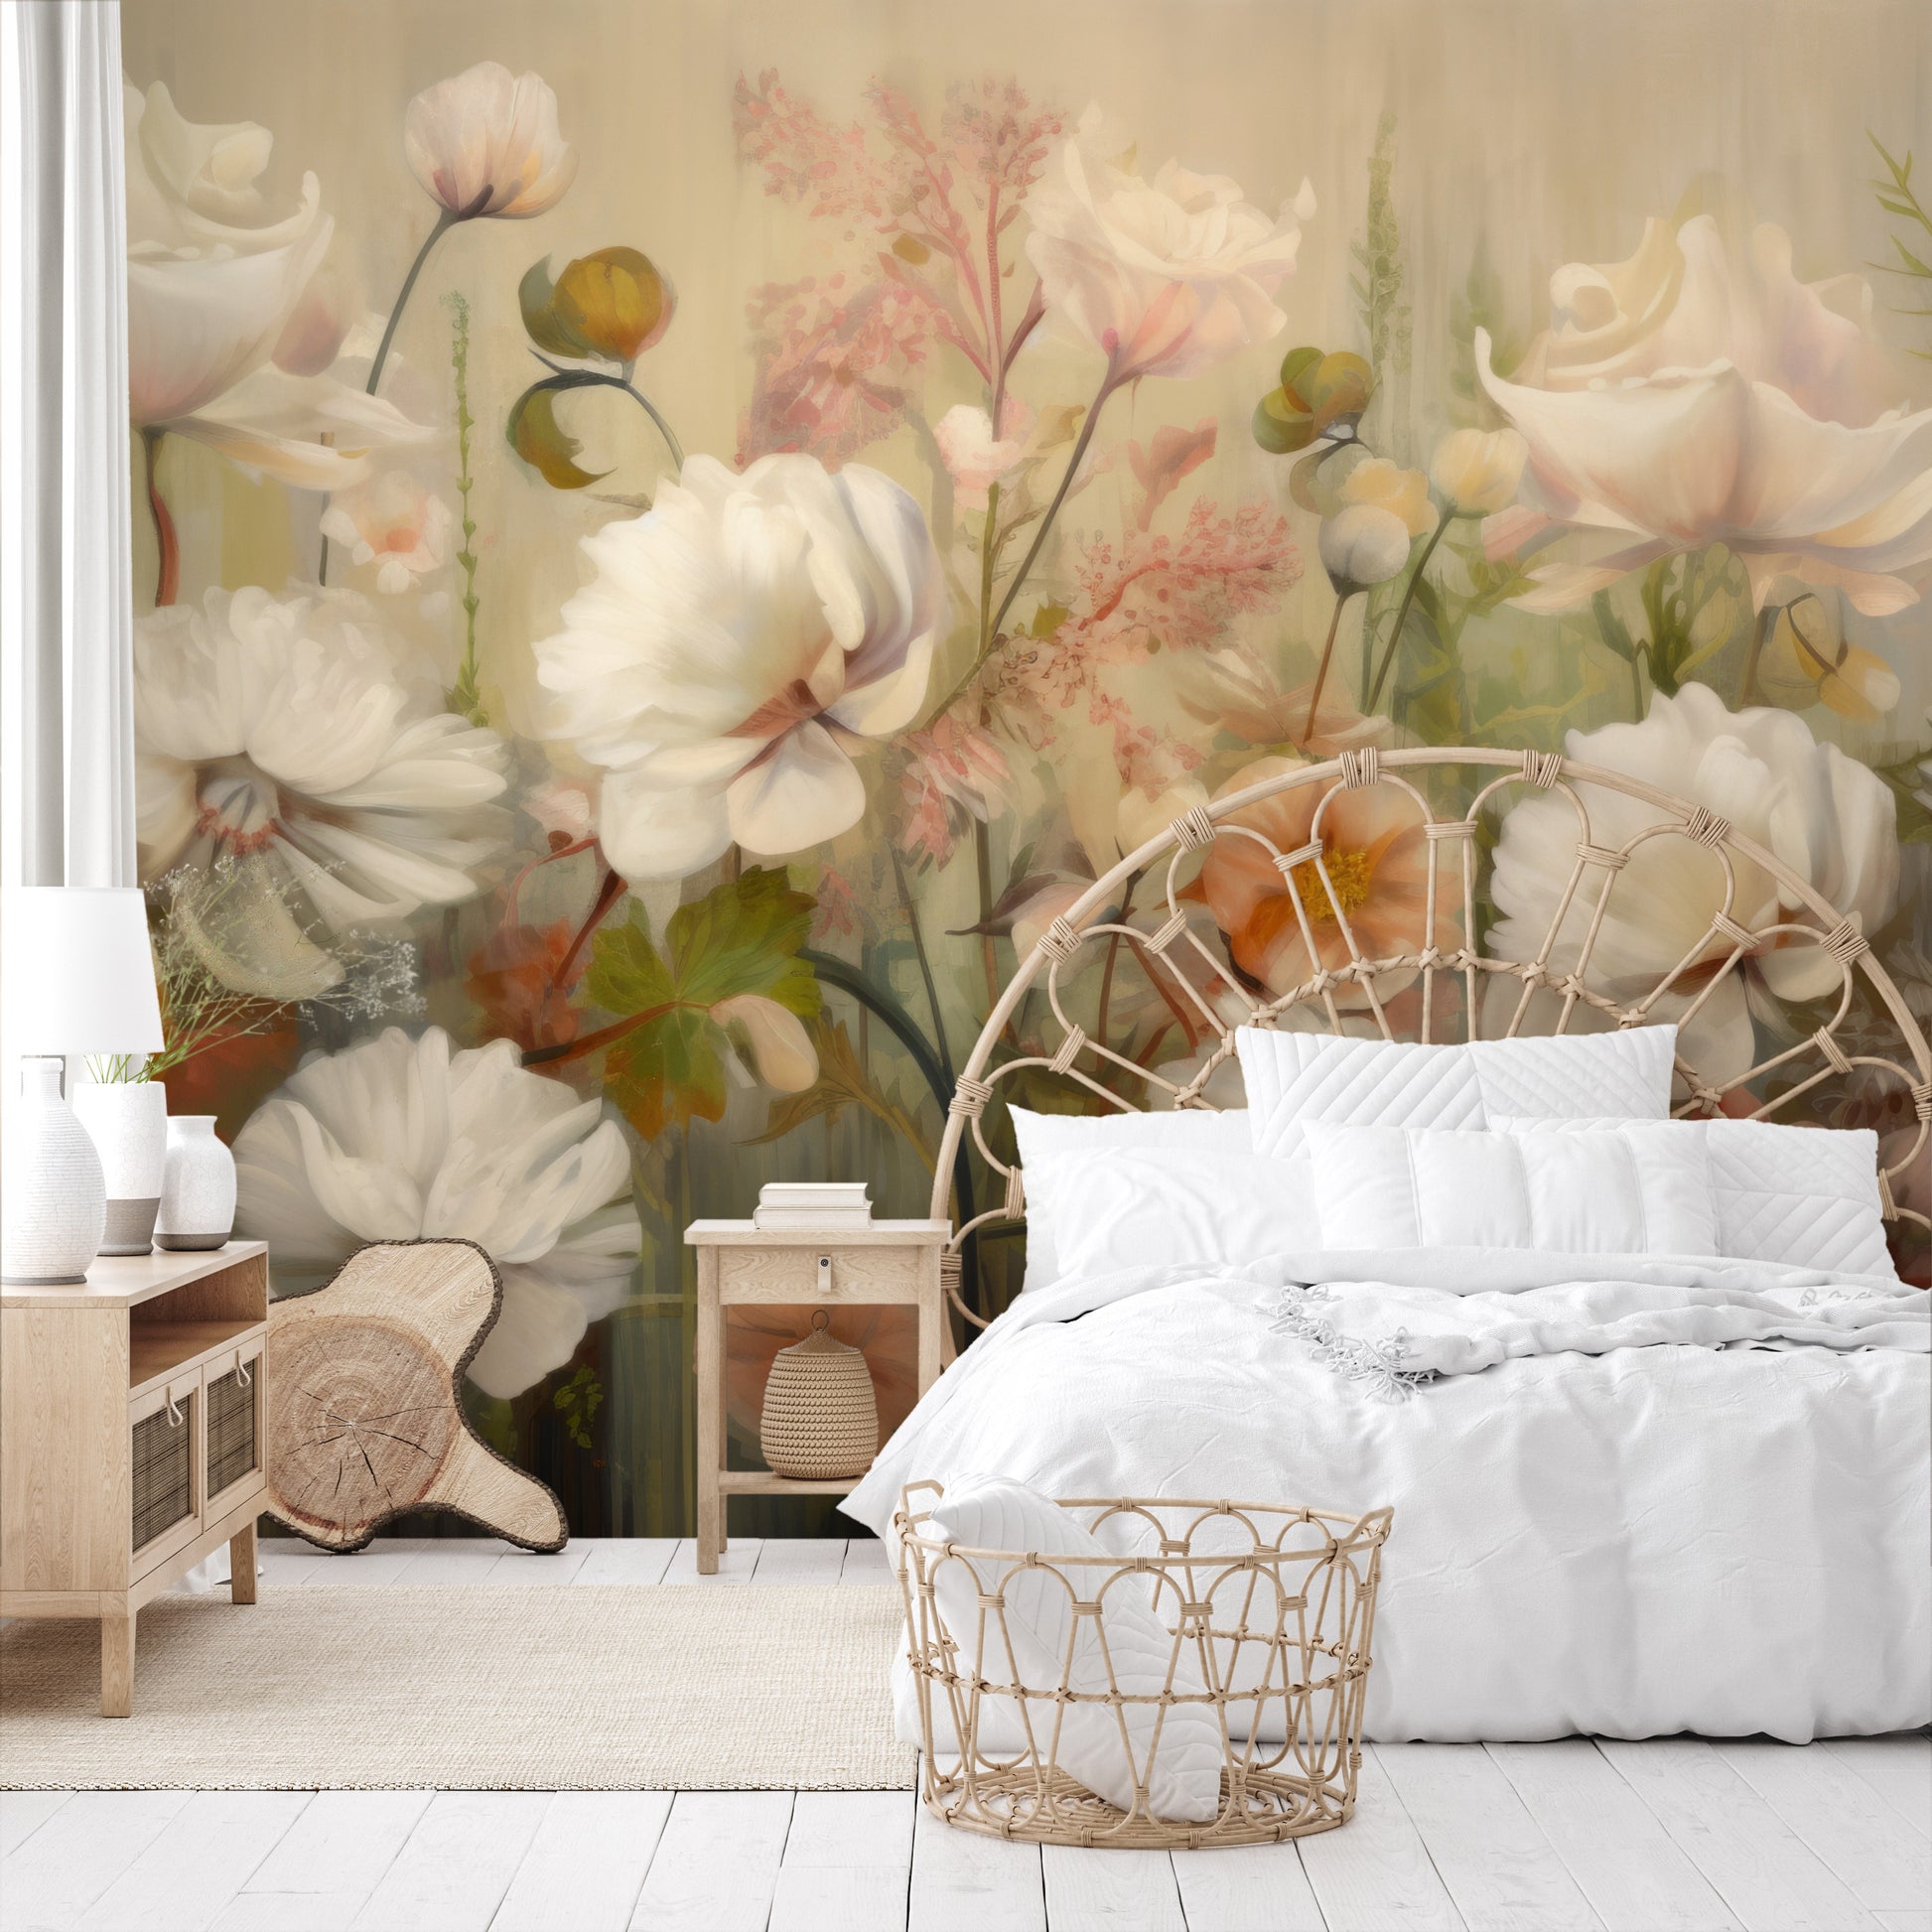 Fototapeta o nazwie Serene Pastel Bouquet użyta w aranzacji wnętrza.